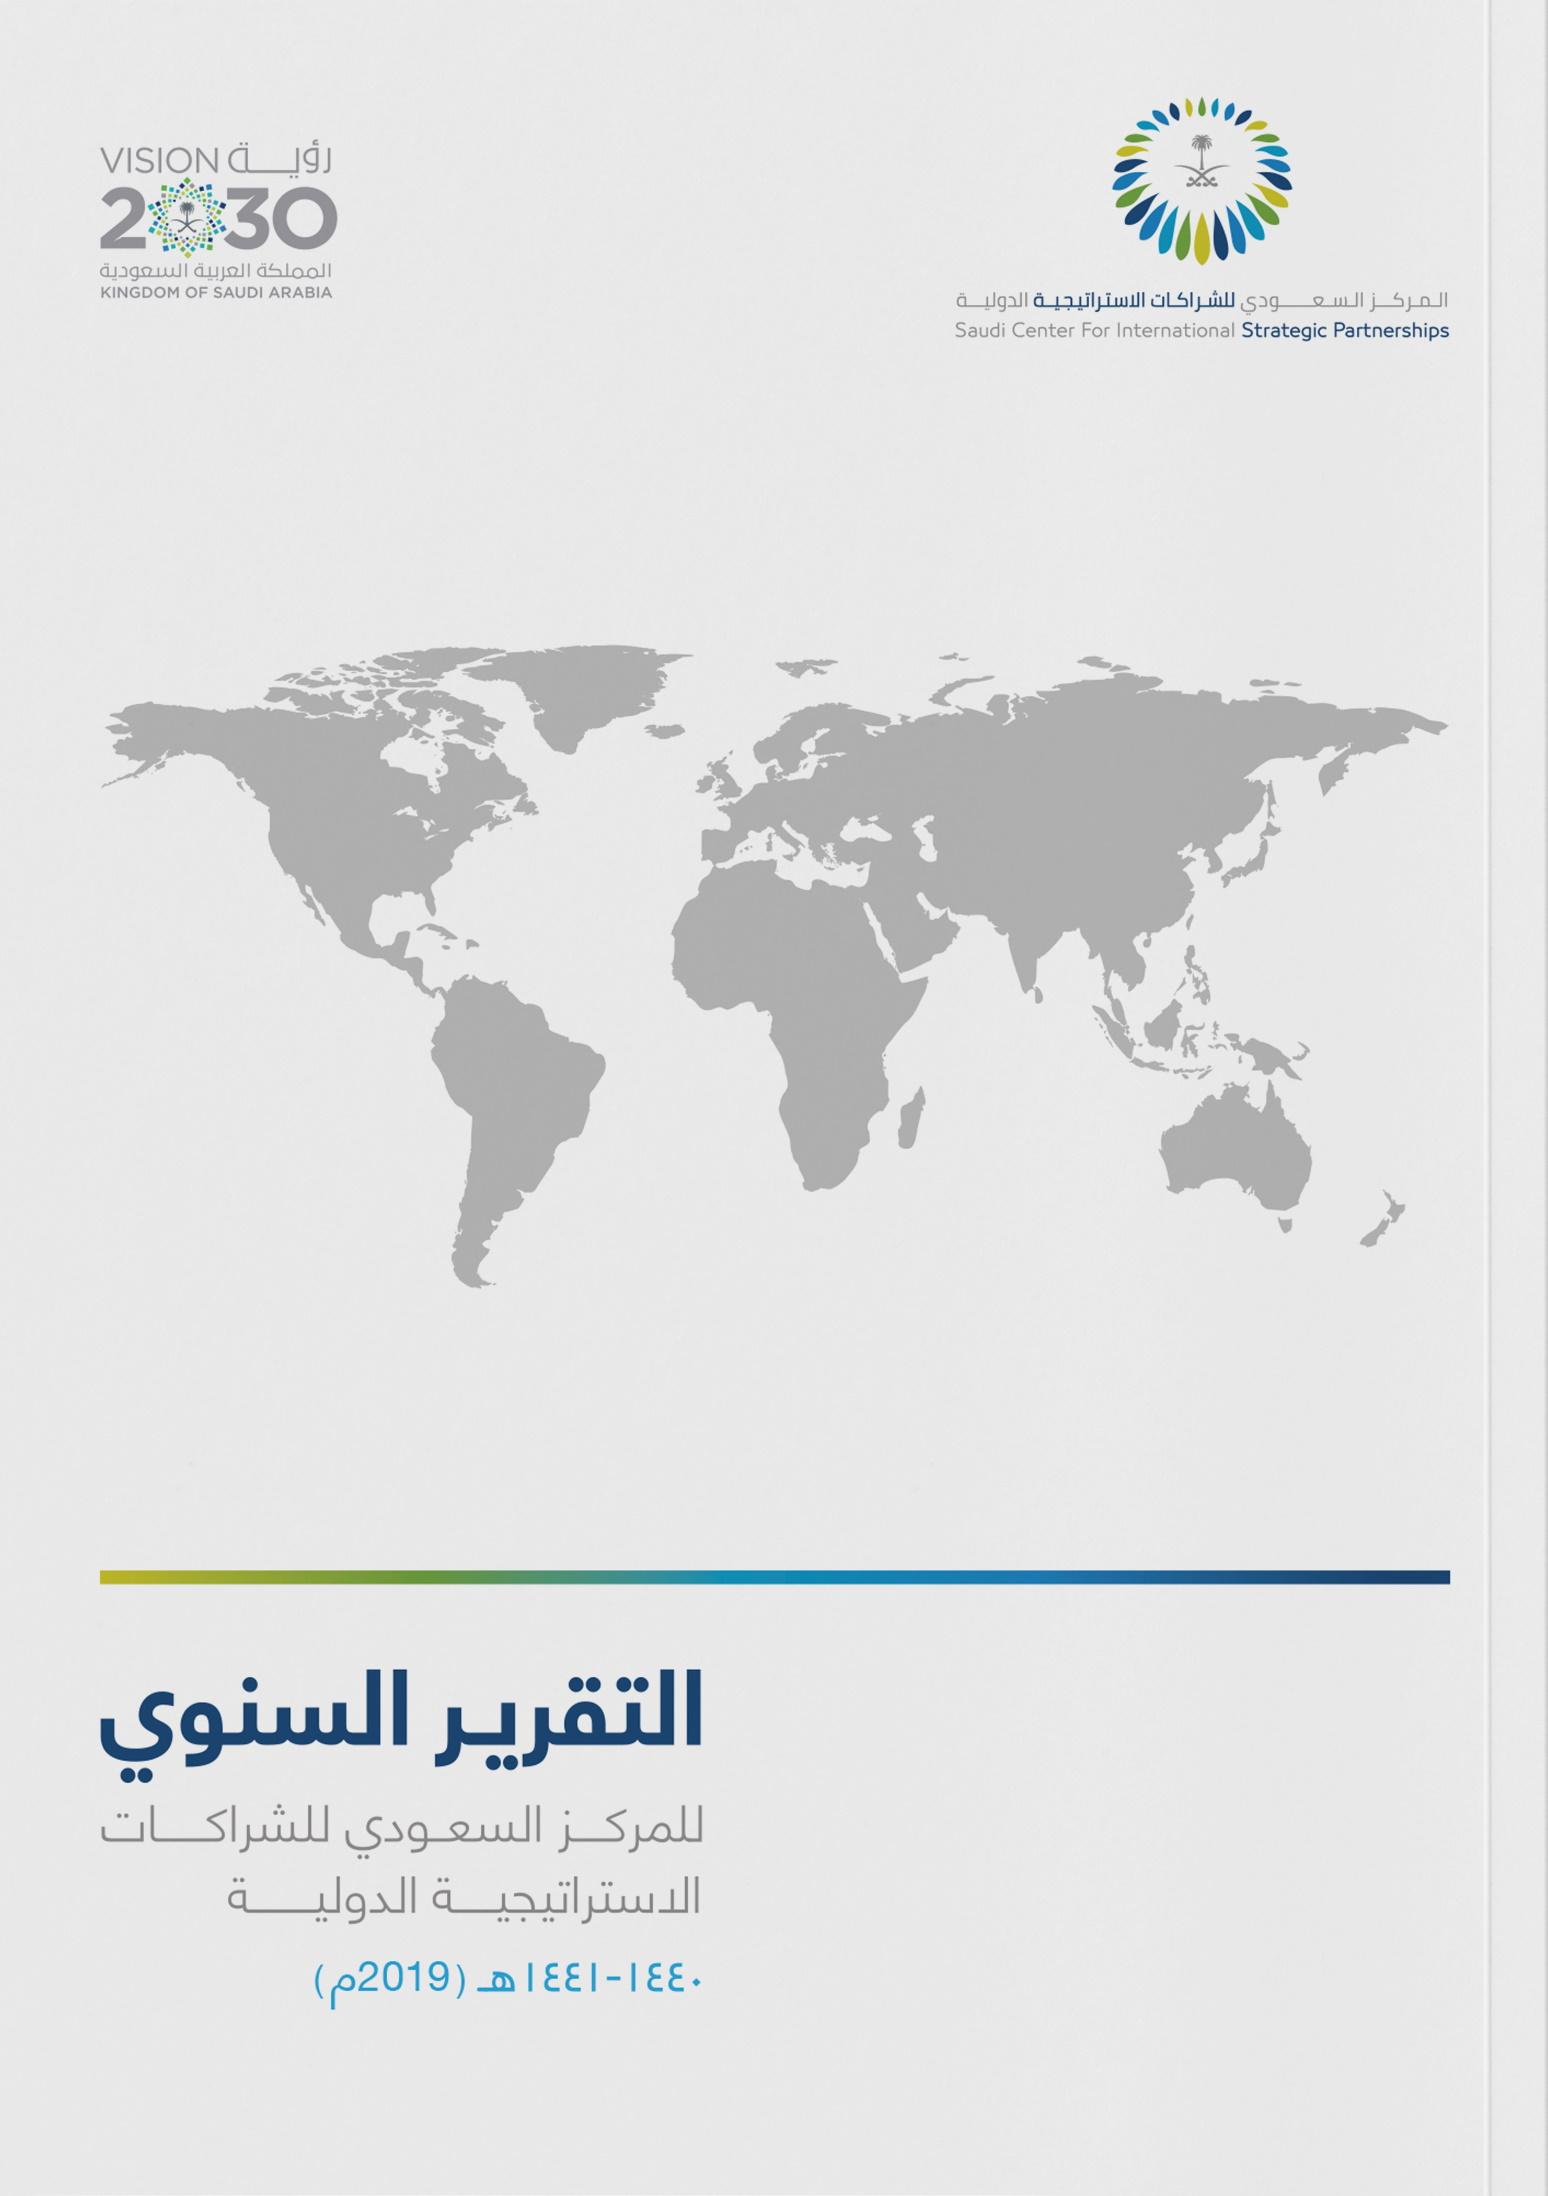 المركز السعودي للشراكات الاستراتيجية الدولية (2019)